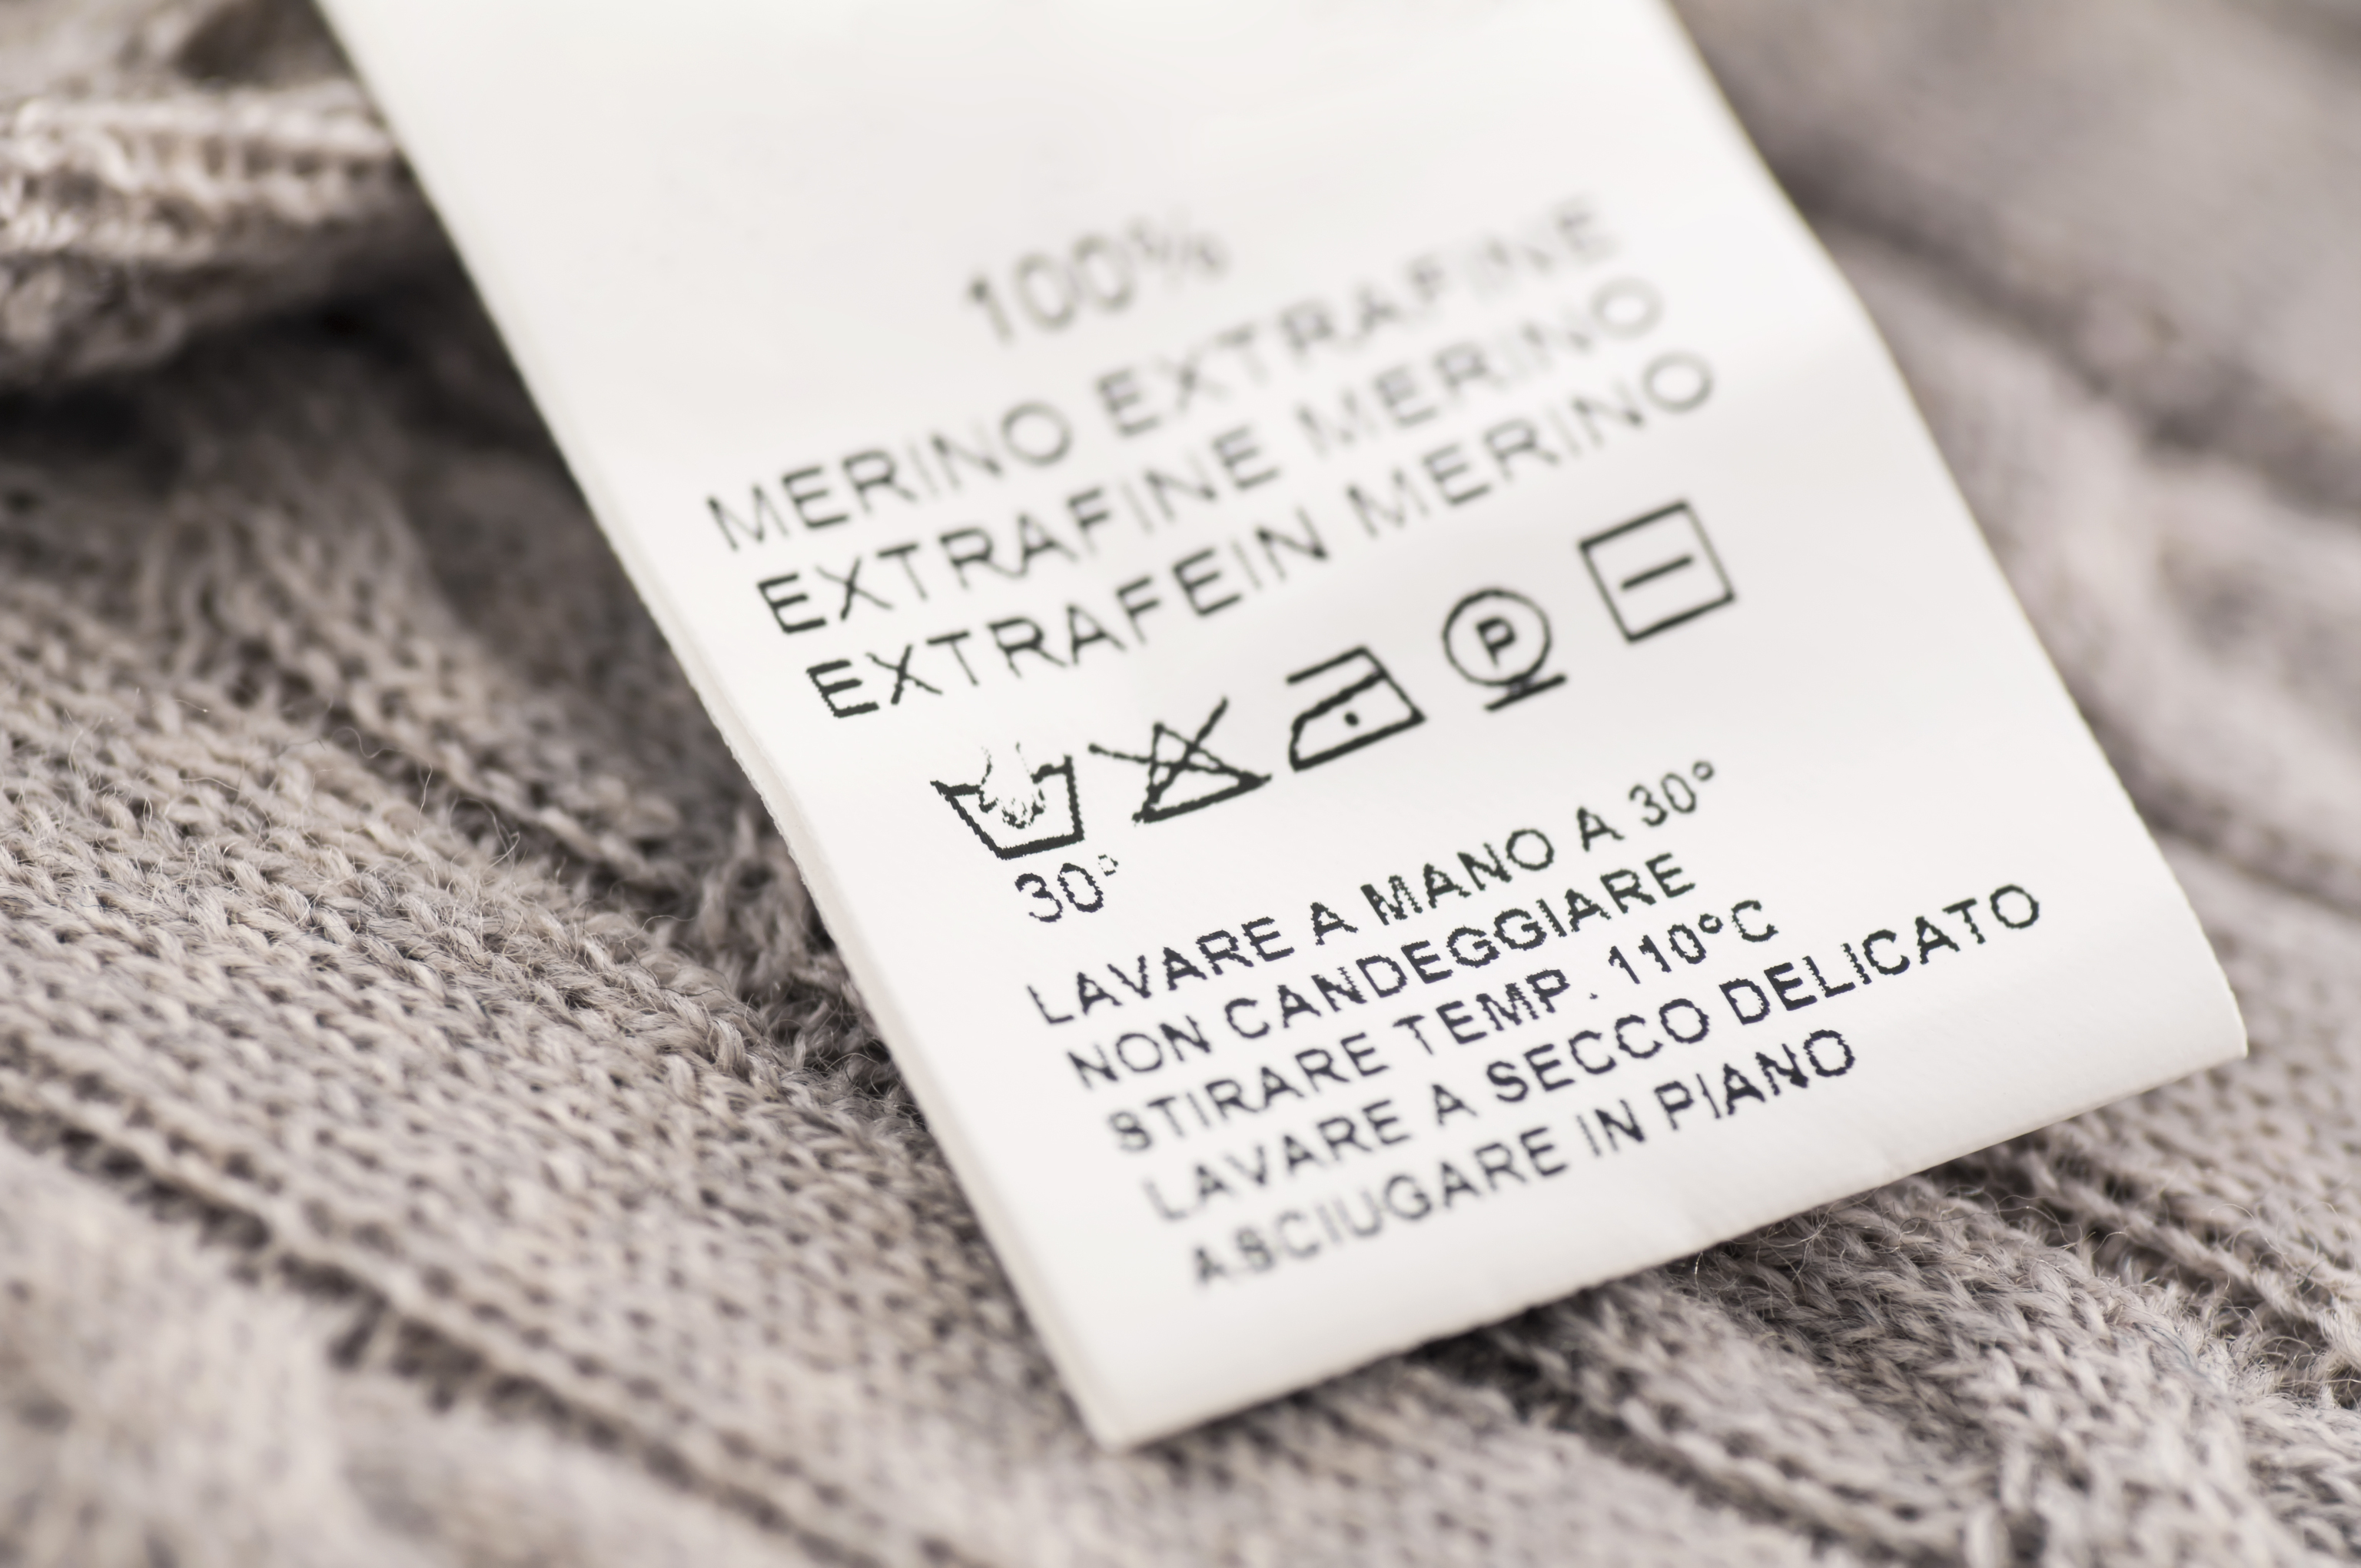 Escanear un QR para poner la lavadora o saber si una prenda es una falsificacin? As son las etiquetas inteligentes